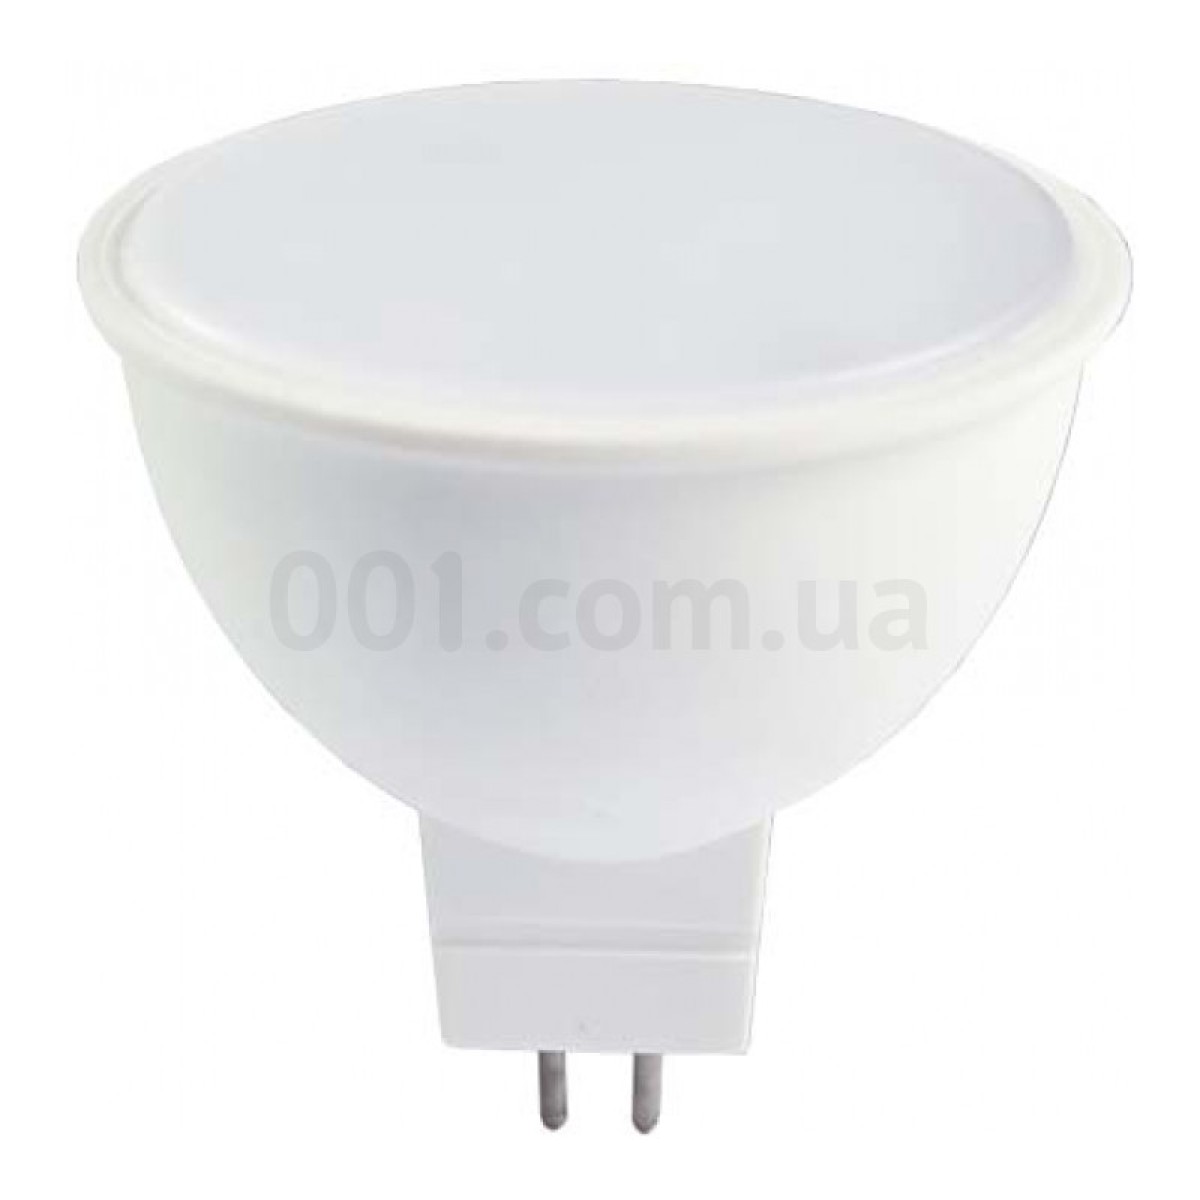 Світлодіодна лампа LB-716 MR16 6Вт 4000K G5.3, Feron 256_256.jpg